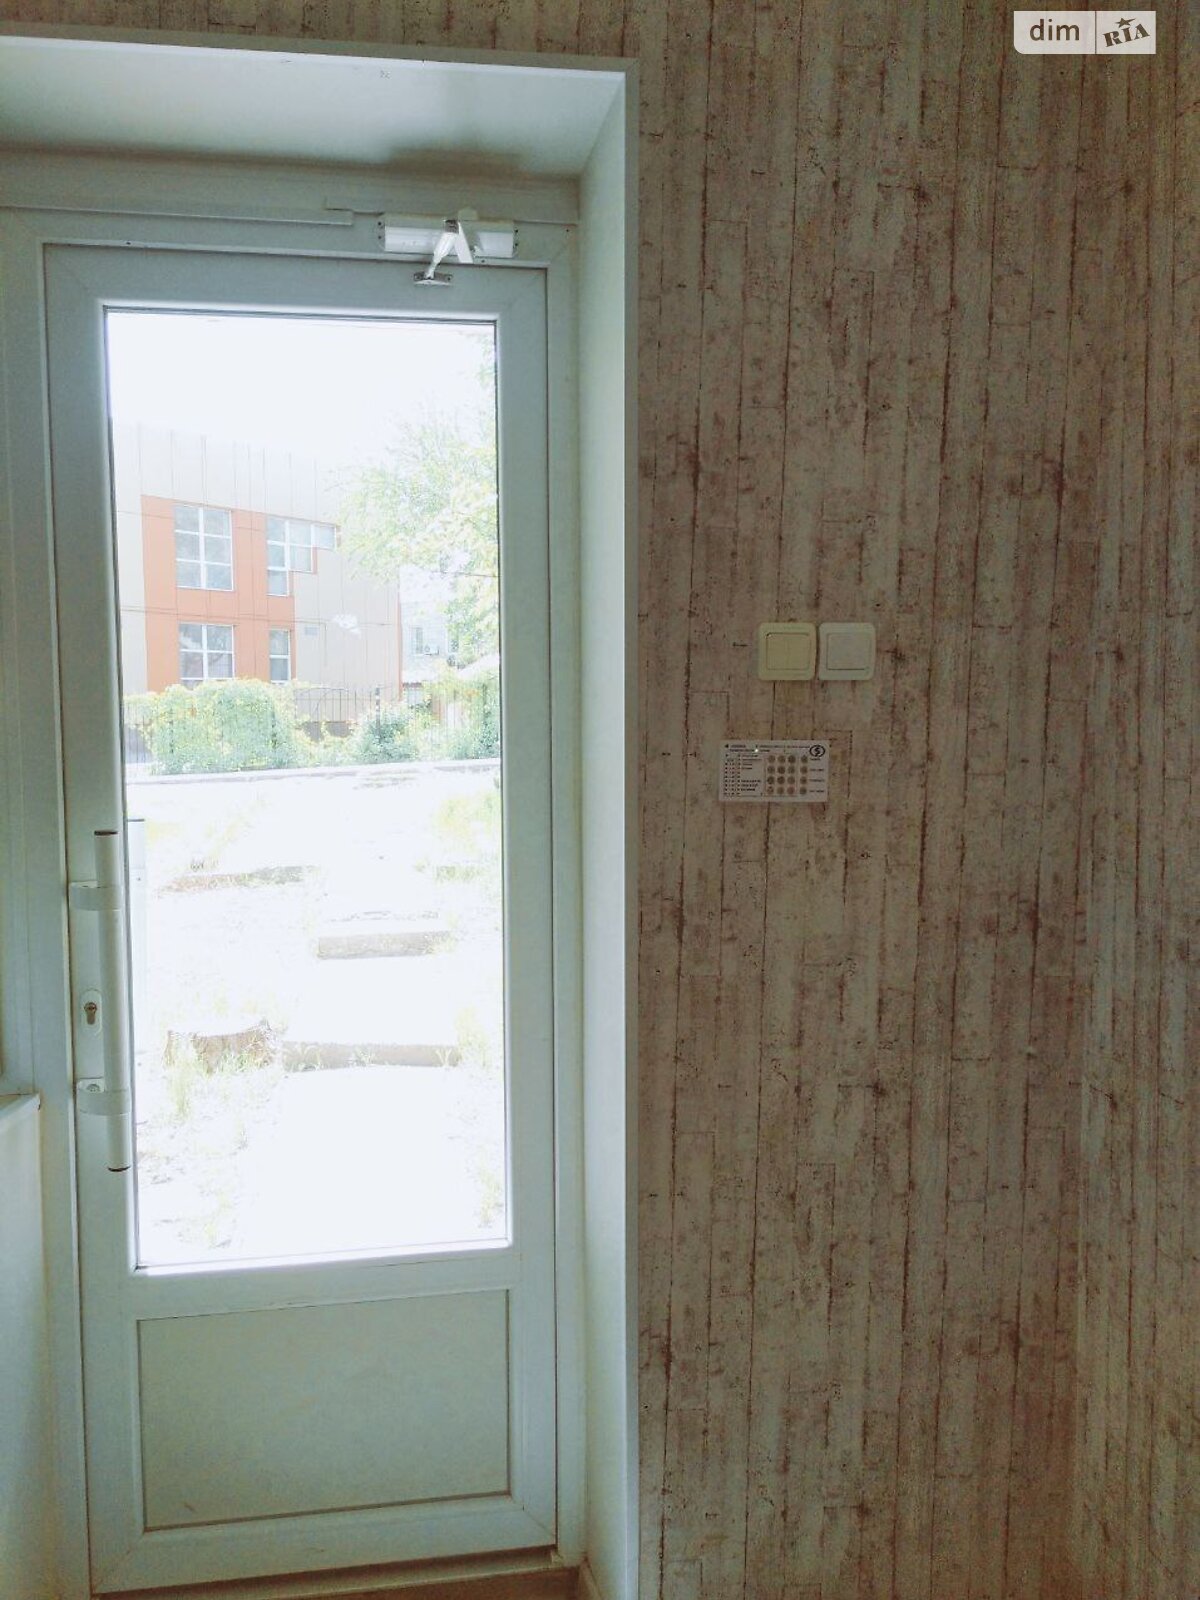 Аренда офисного помещения в Запорожье, Хортицкое шоссе шоссе 30Б, помещений - 1, этаж - 1 фото 1